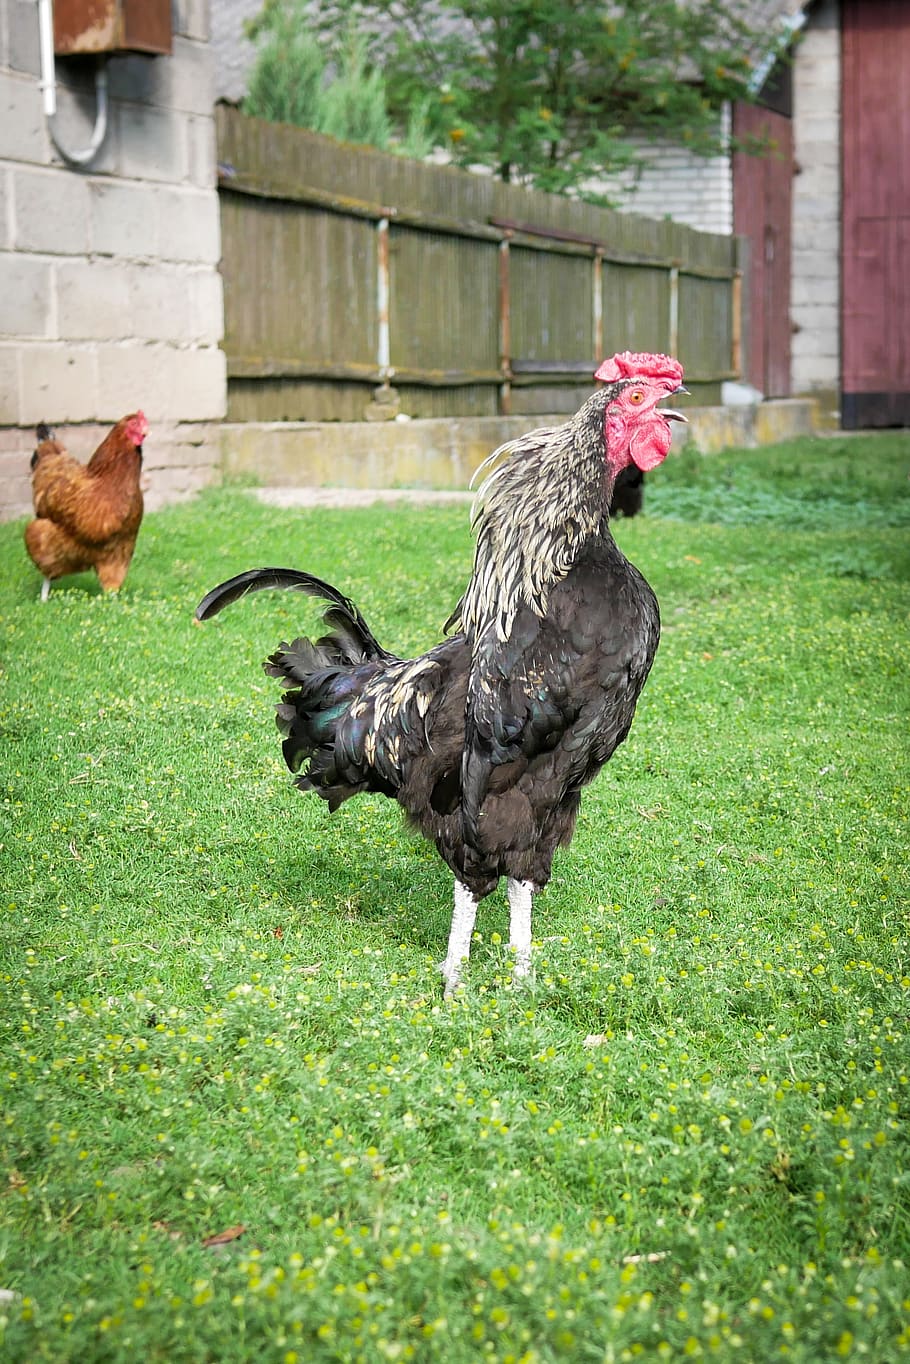 cock, the hen, grass, bird, village, animal themes, animal, livestock, chicken - bird, chicken